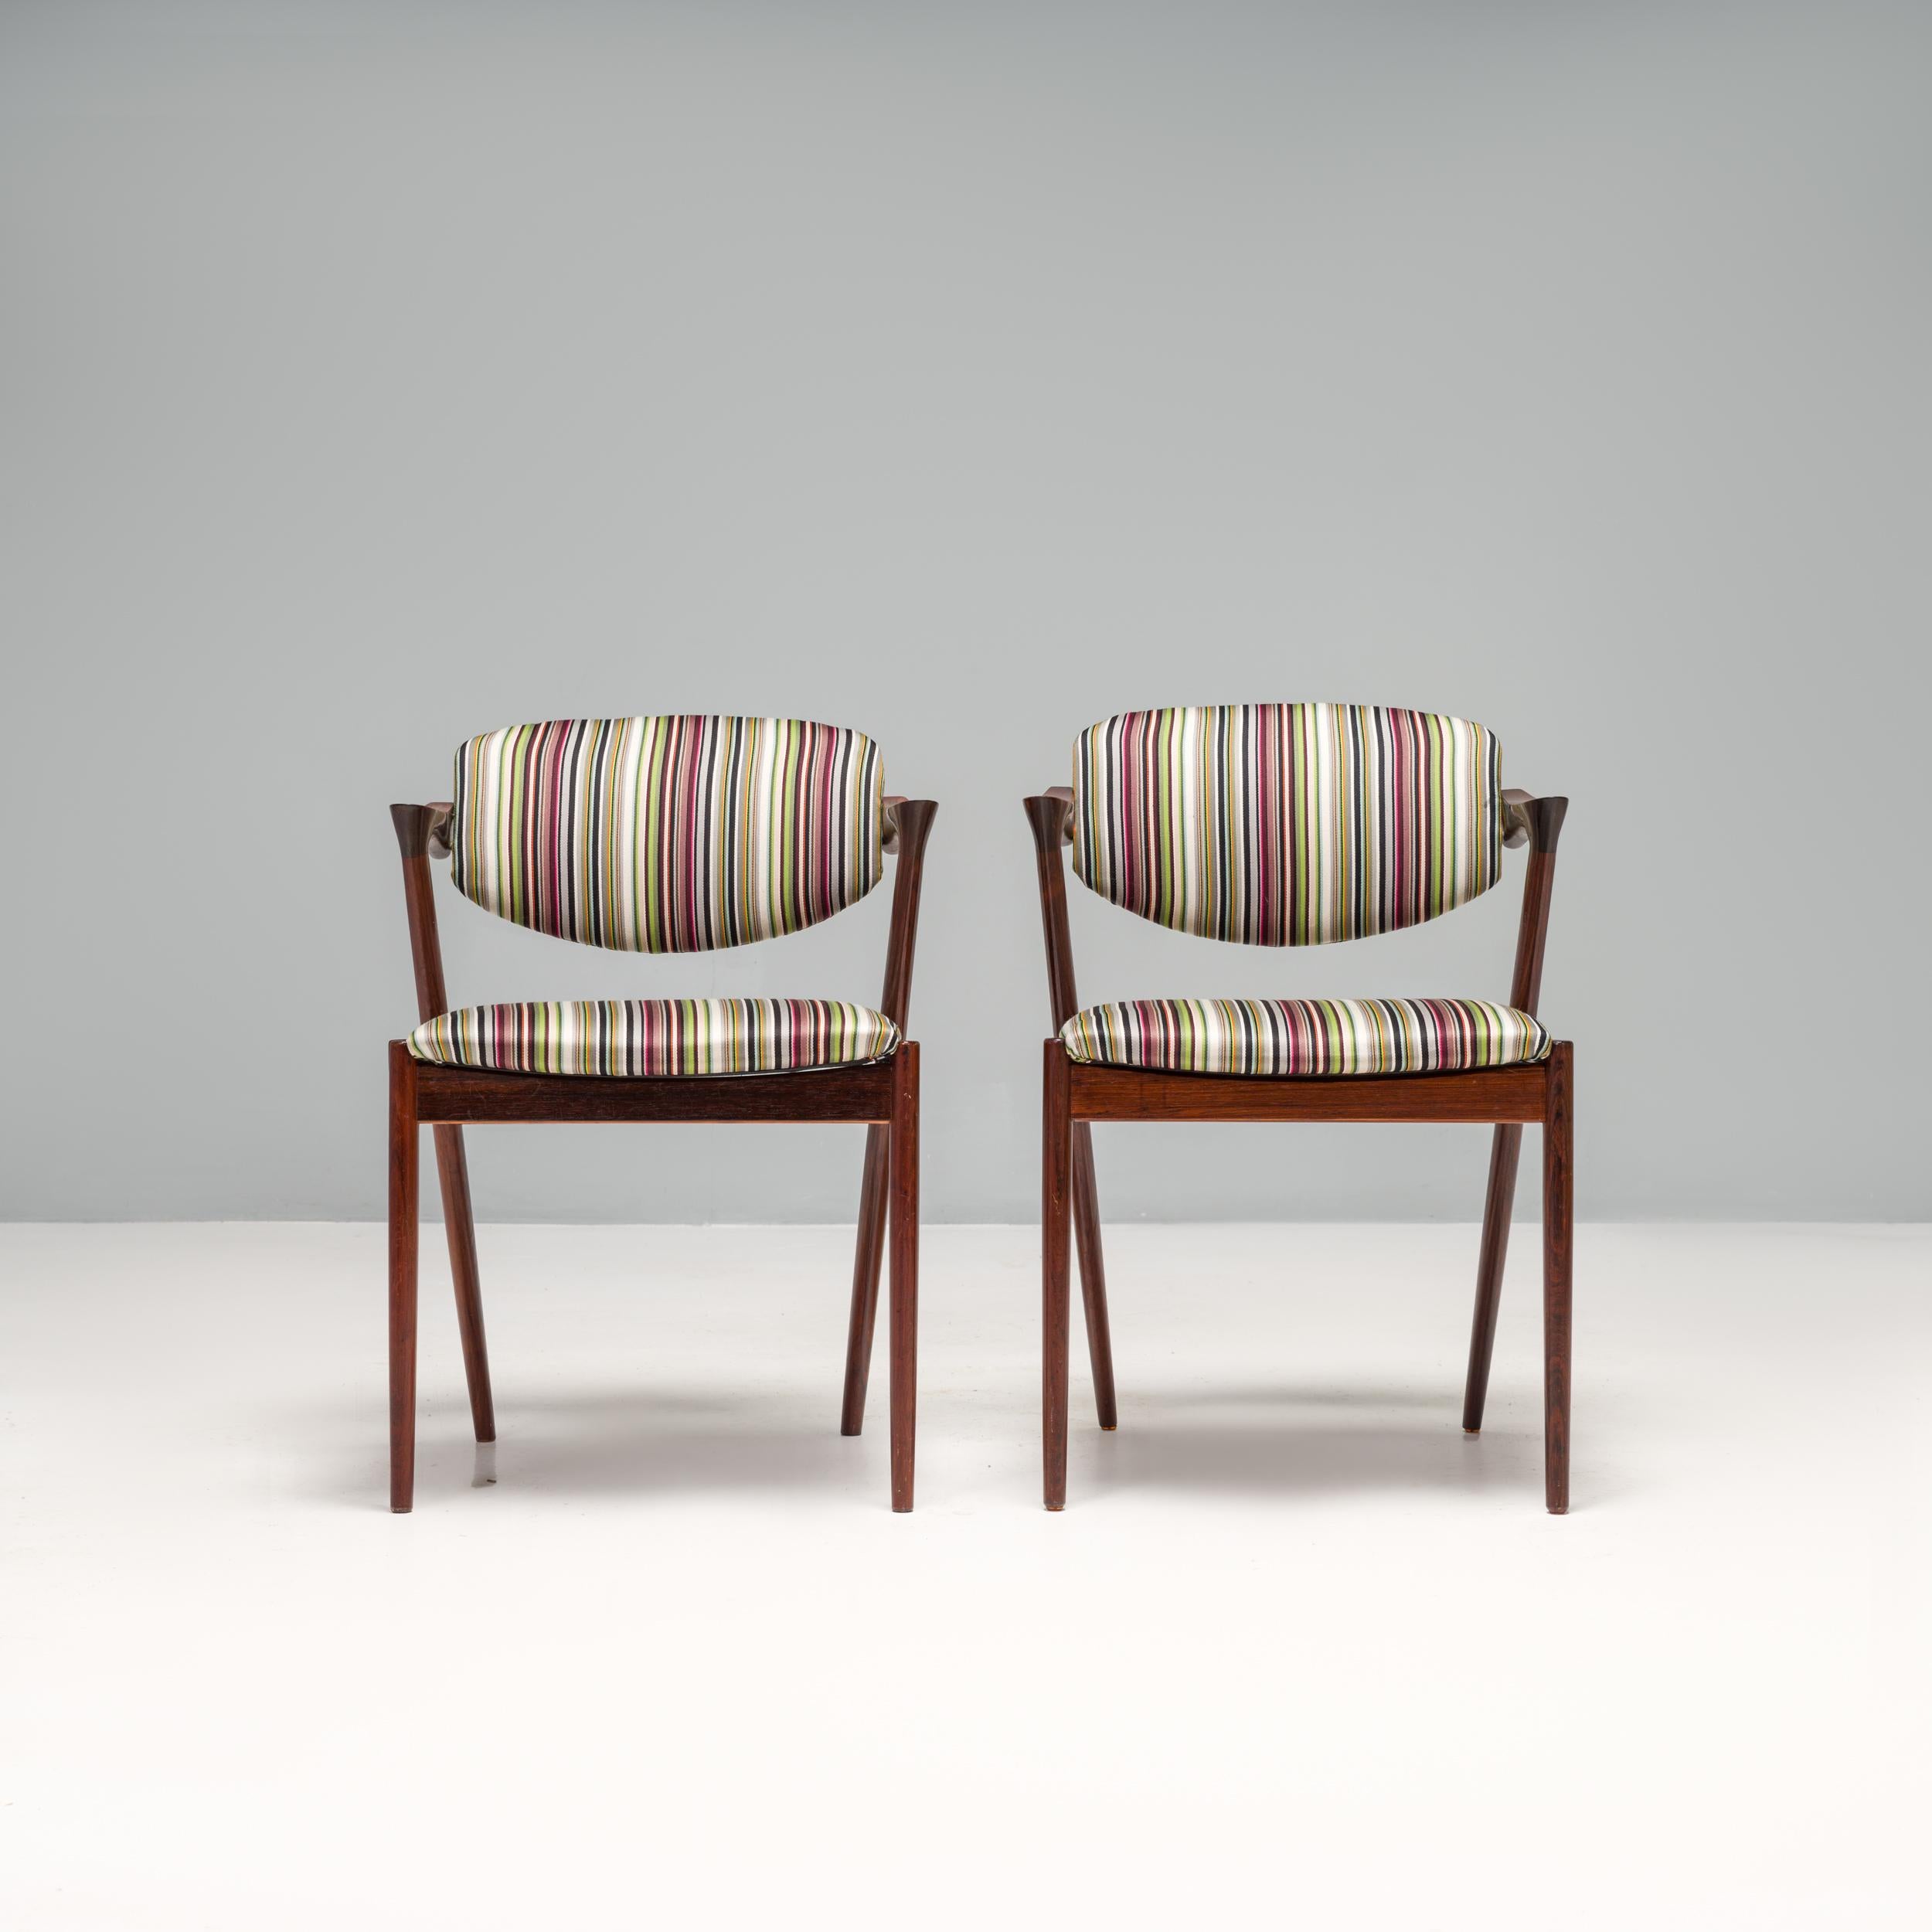 Der 1956 von Kai Kristiansen entworfene und von der Schou Andersen Møbelfabrik hergestellte Stuhl No 42 ist einer der bekanntesten Entwürfe für dänische Möbel aus der Mitte des Jahrhunderts.

Die Stühle sind aus einem Palisanderholzrahmen in der